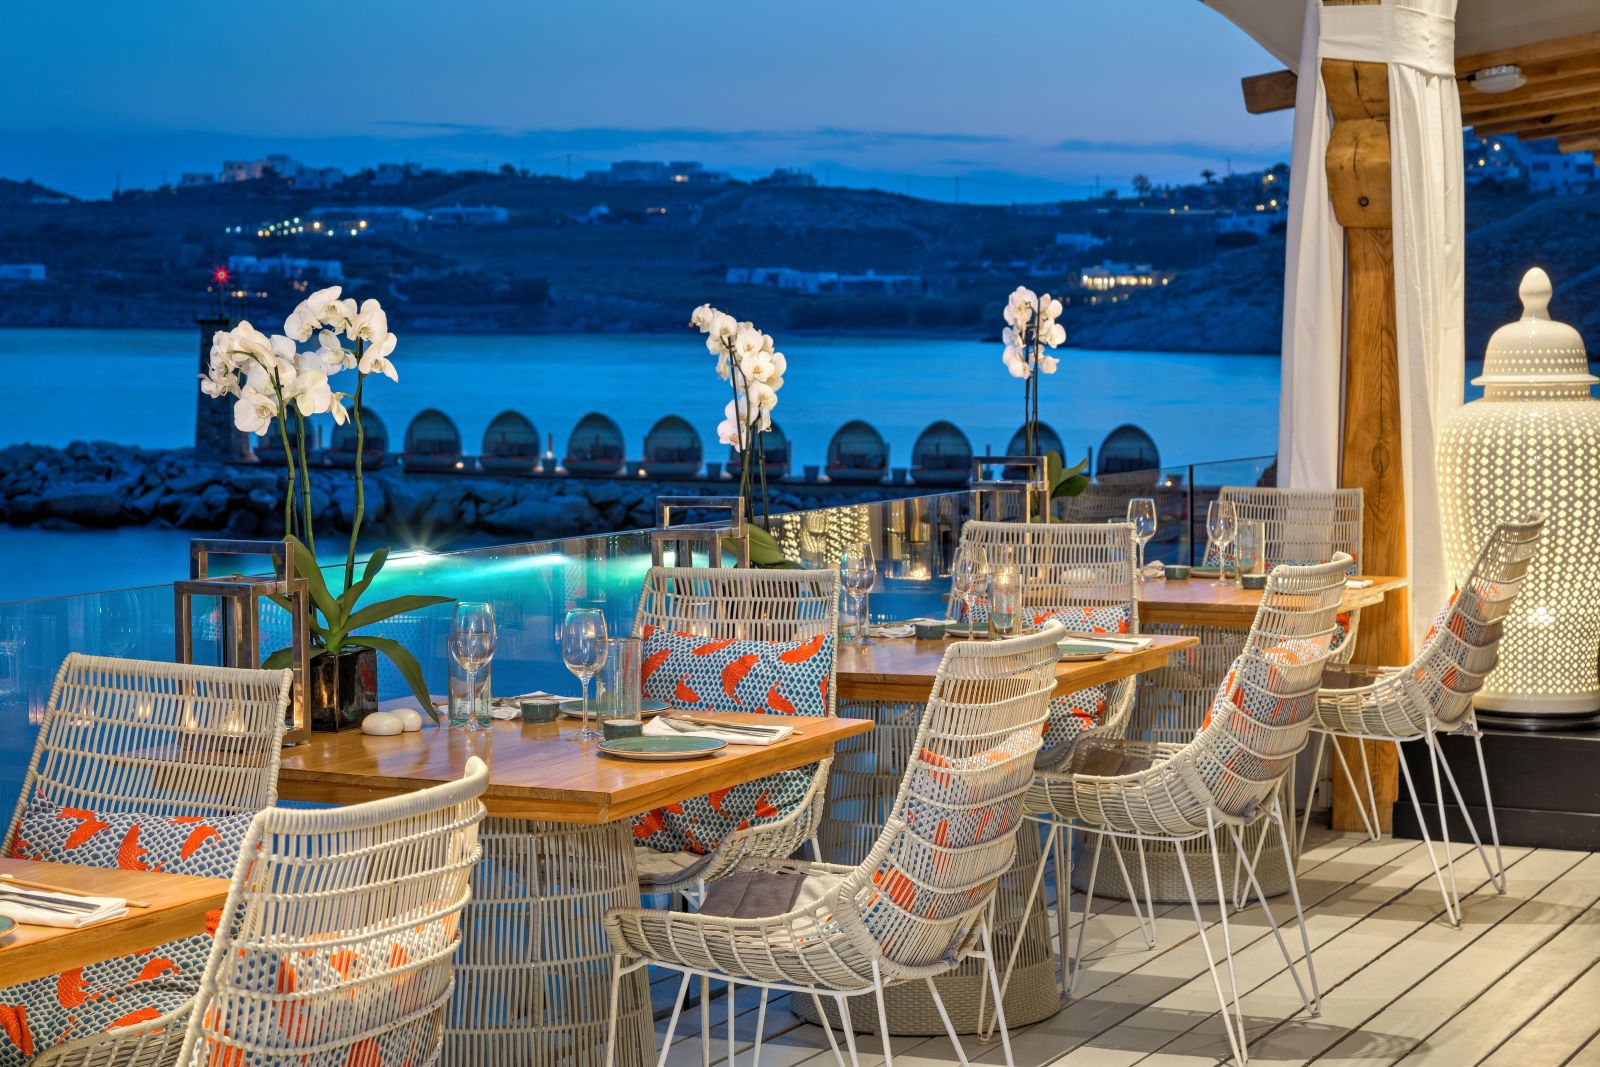 Evening at the Buddha Bar at the Santa Marina Resort and Villas in Mykonos Greece